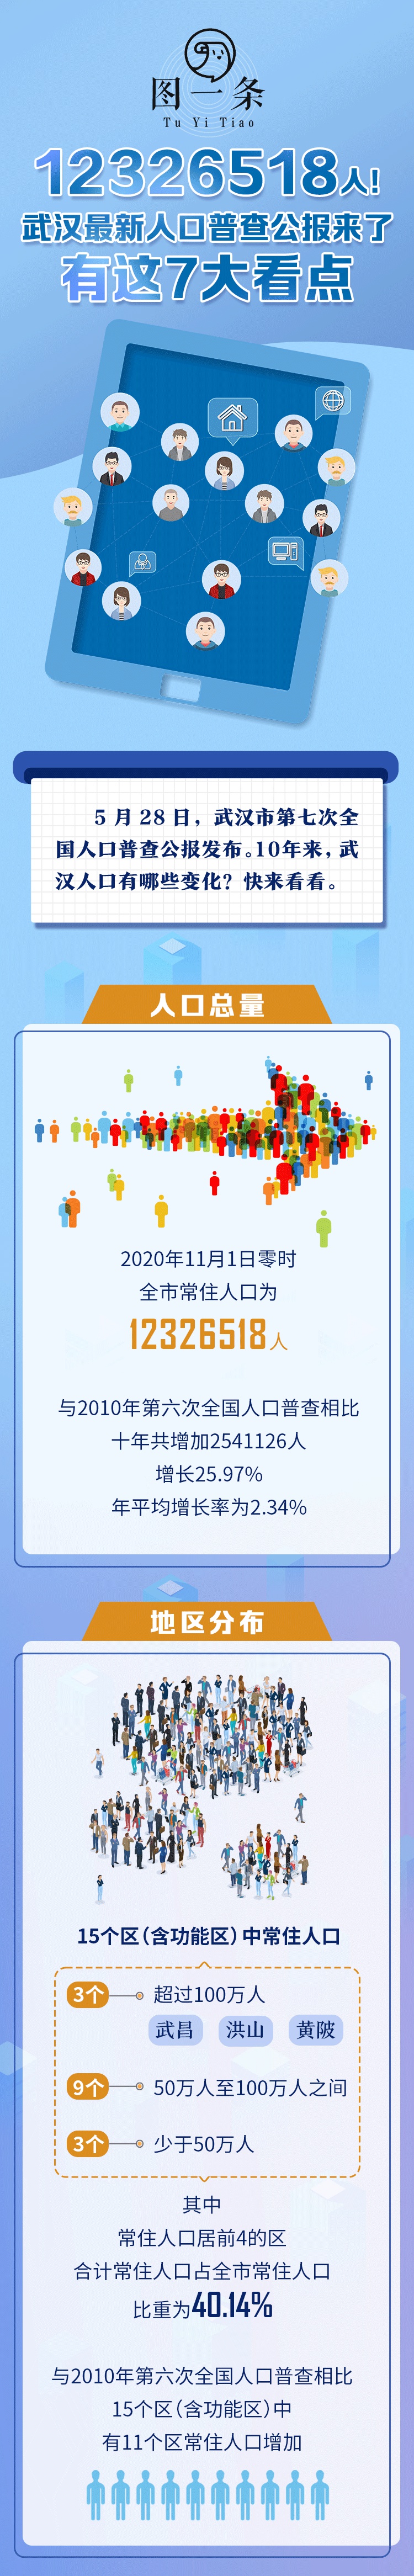 武汉市第七次全国人口普查公报发布，全市常住人口为12326518人